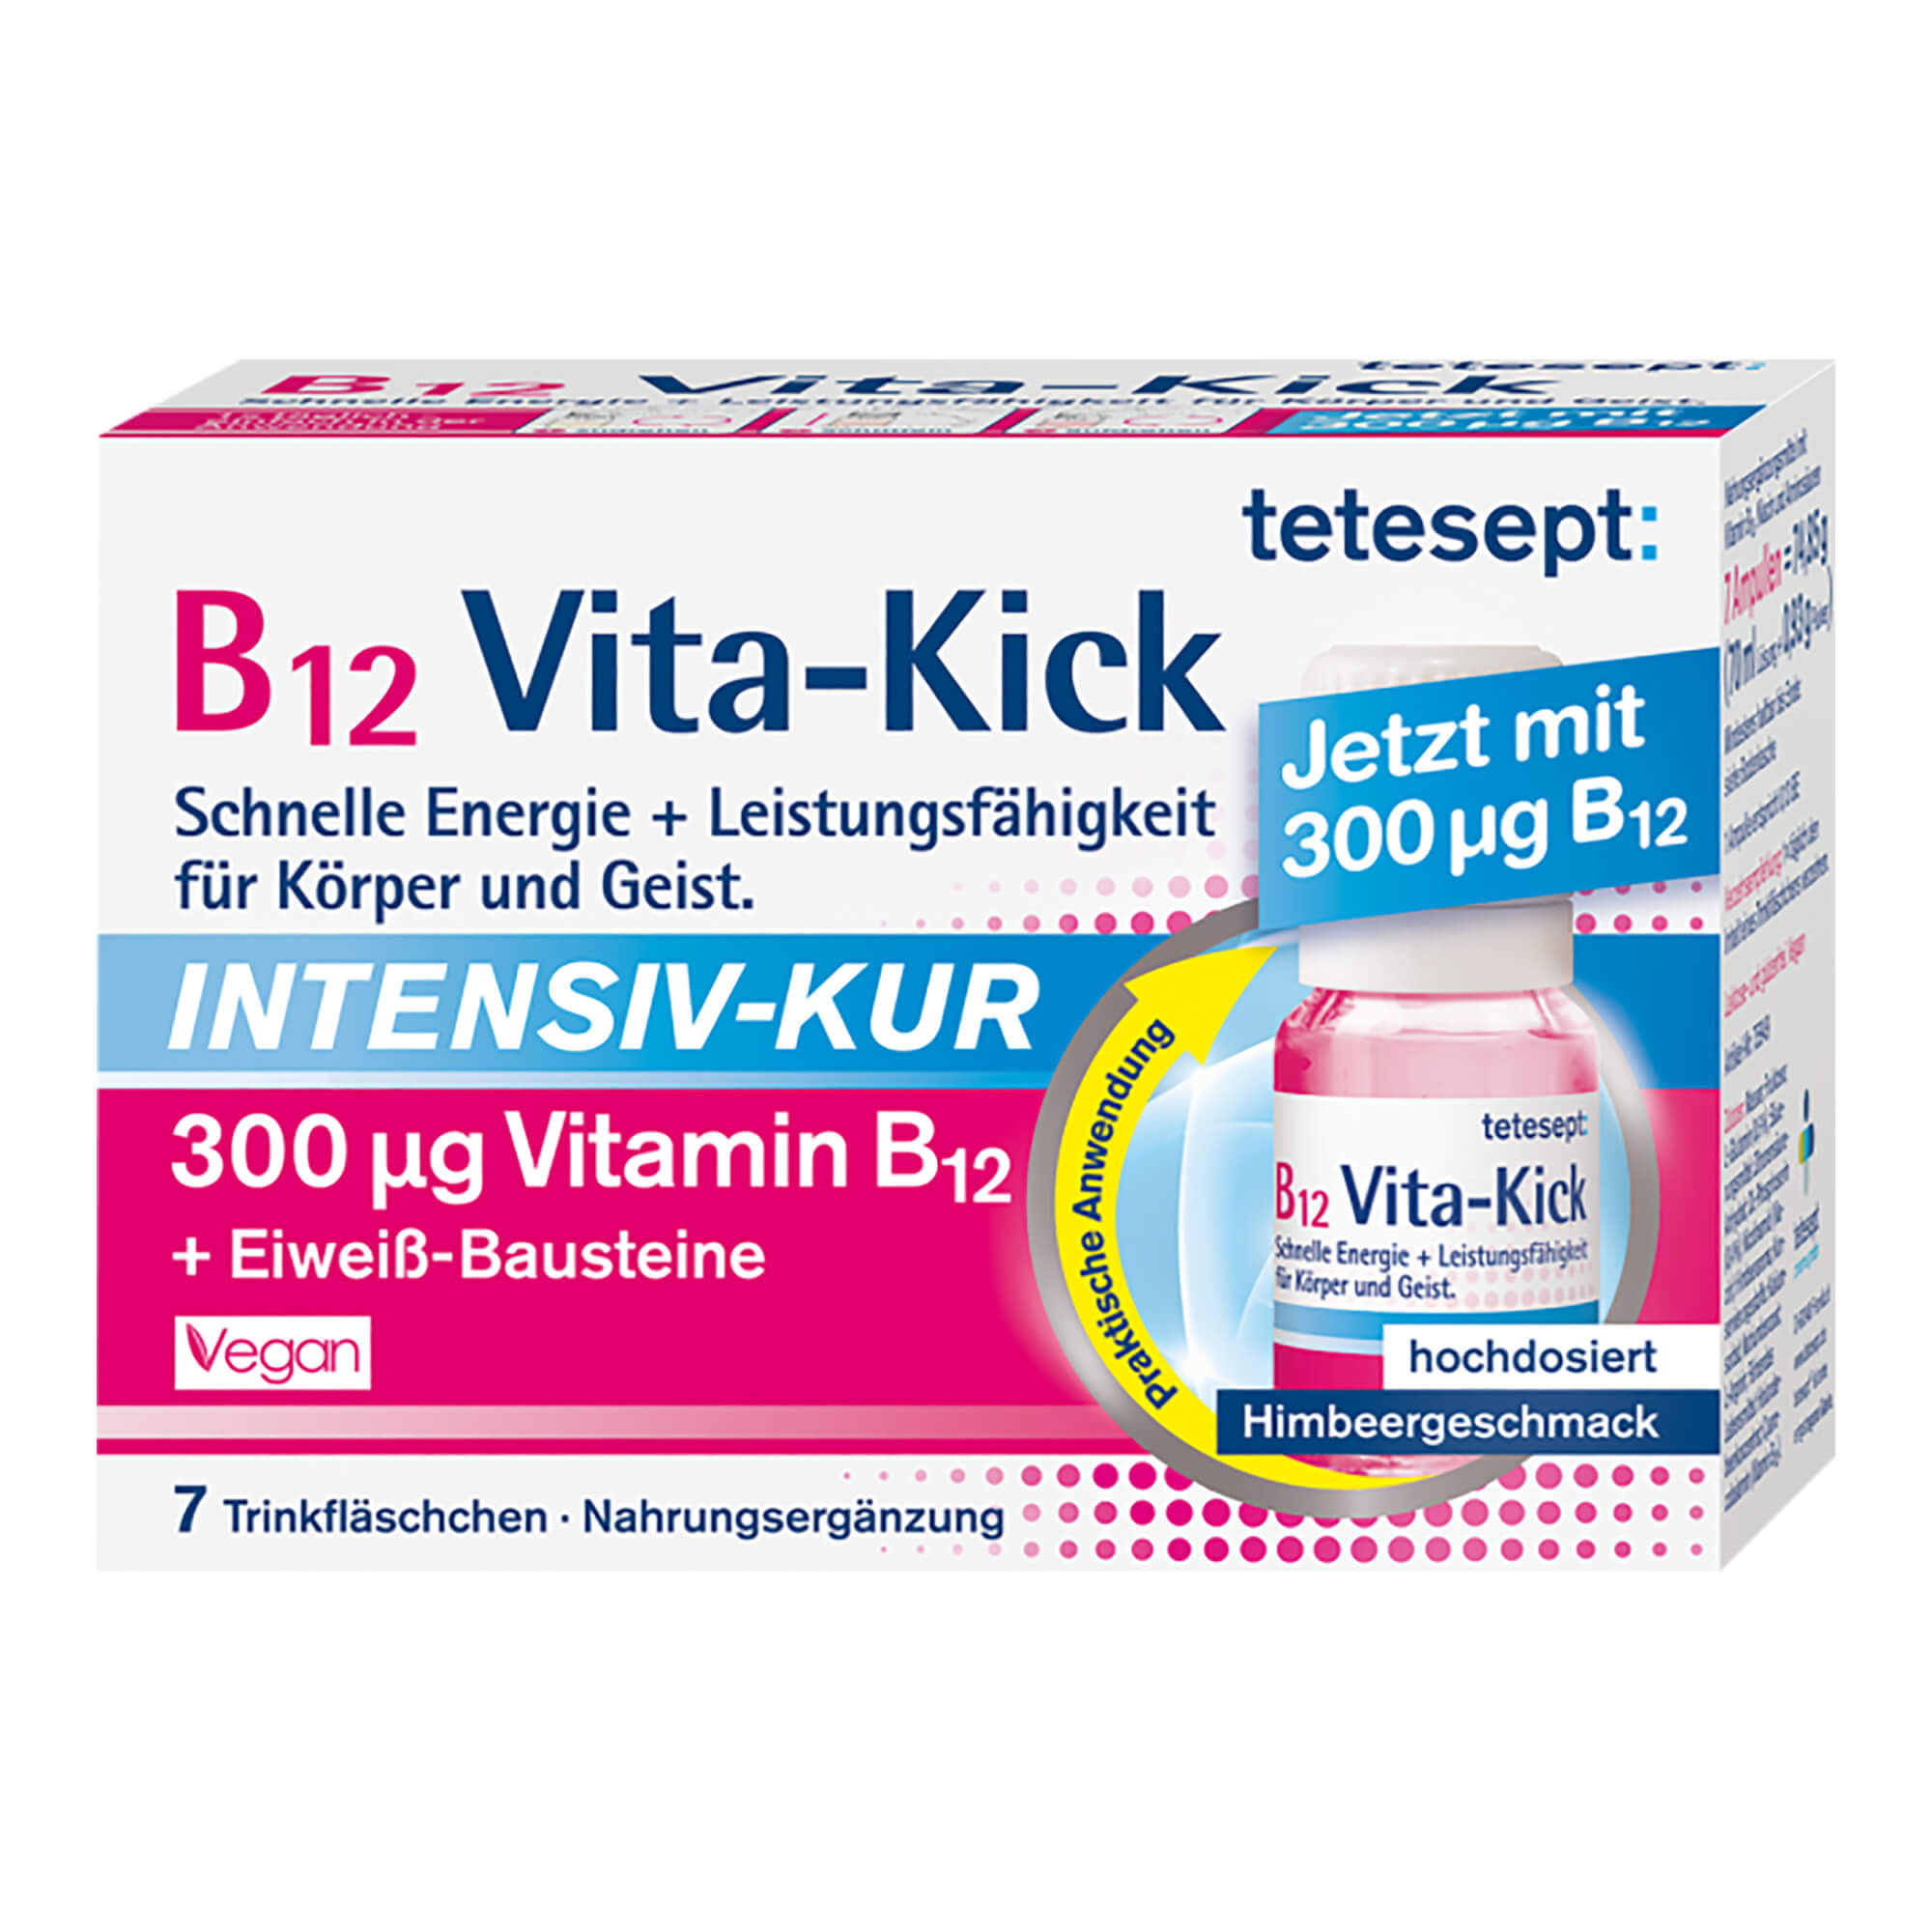 Nahrungsergänzungsmittel mit Vitamin B12. Mit Himbeergeschmack. Für mehr Leistungsfähigkeit.